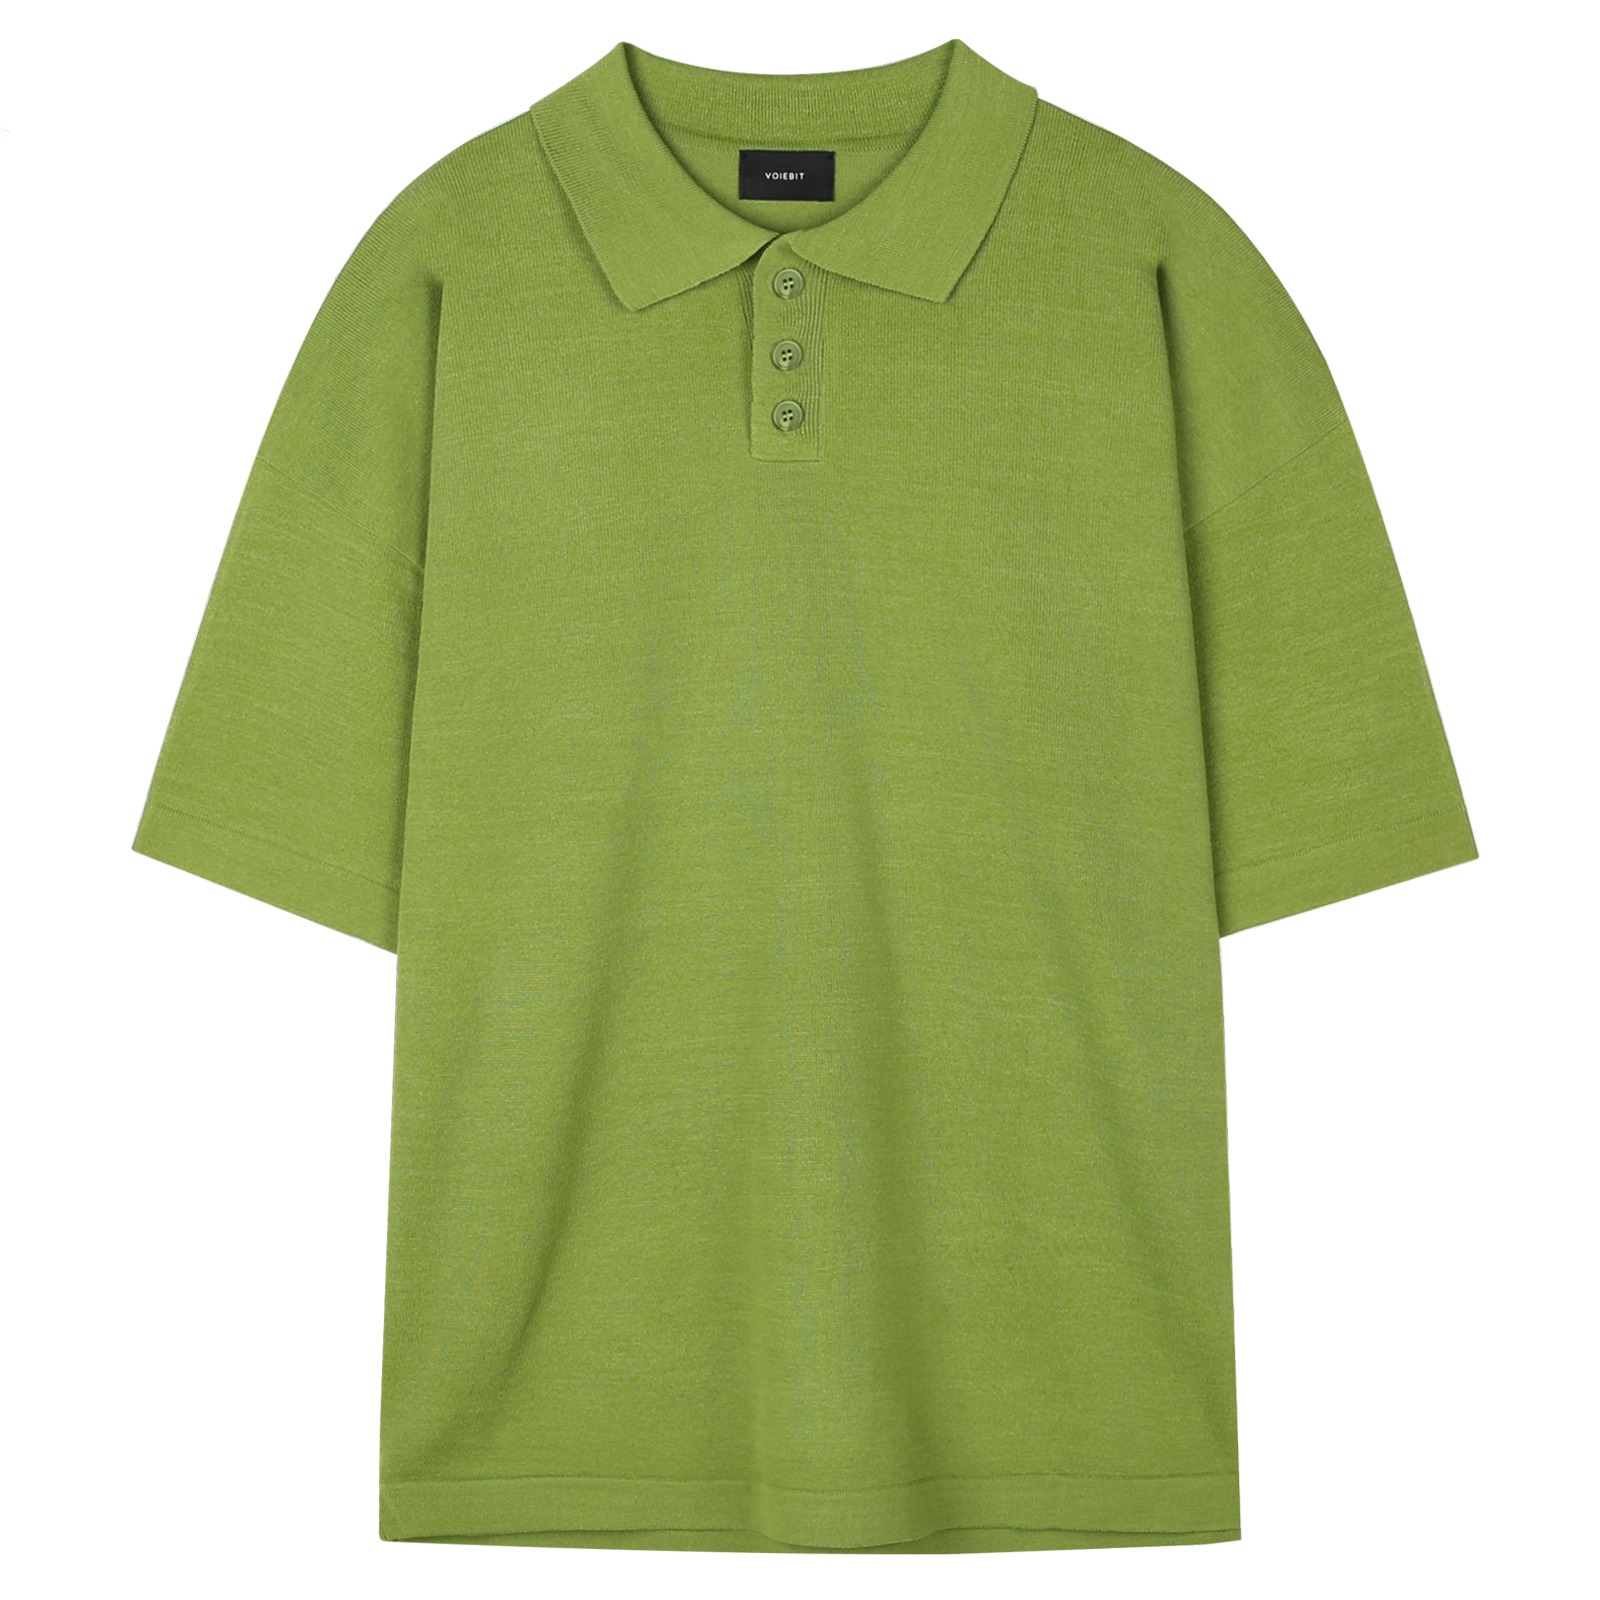 V157 summer cotton collar knit (light green)